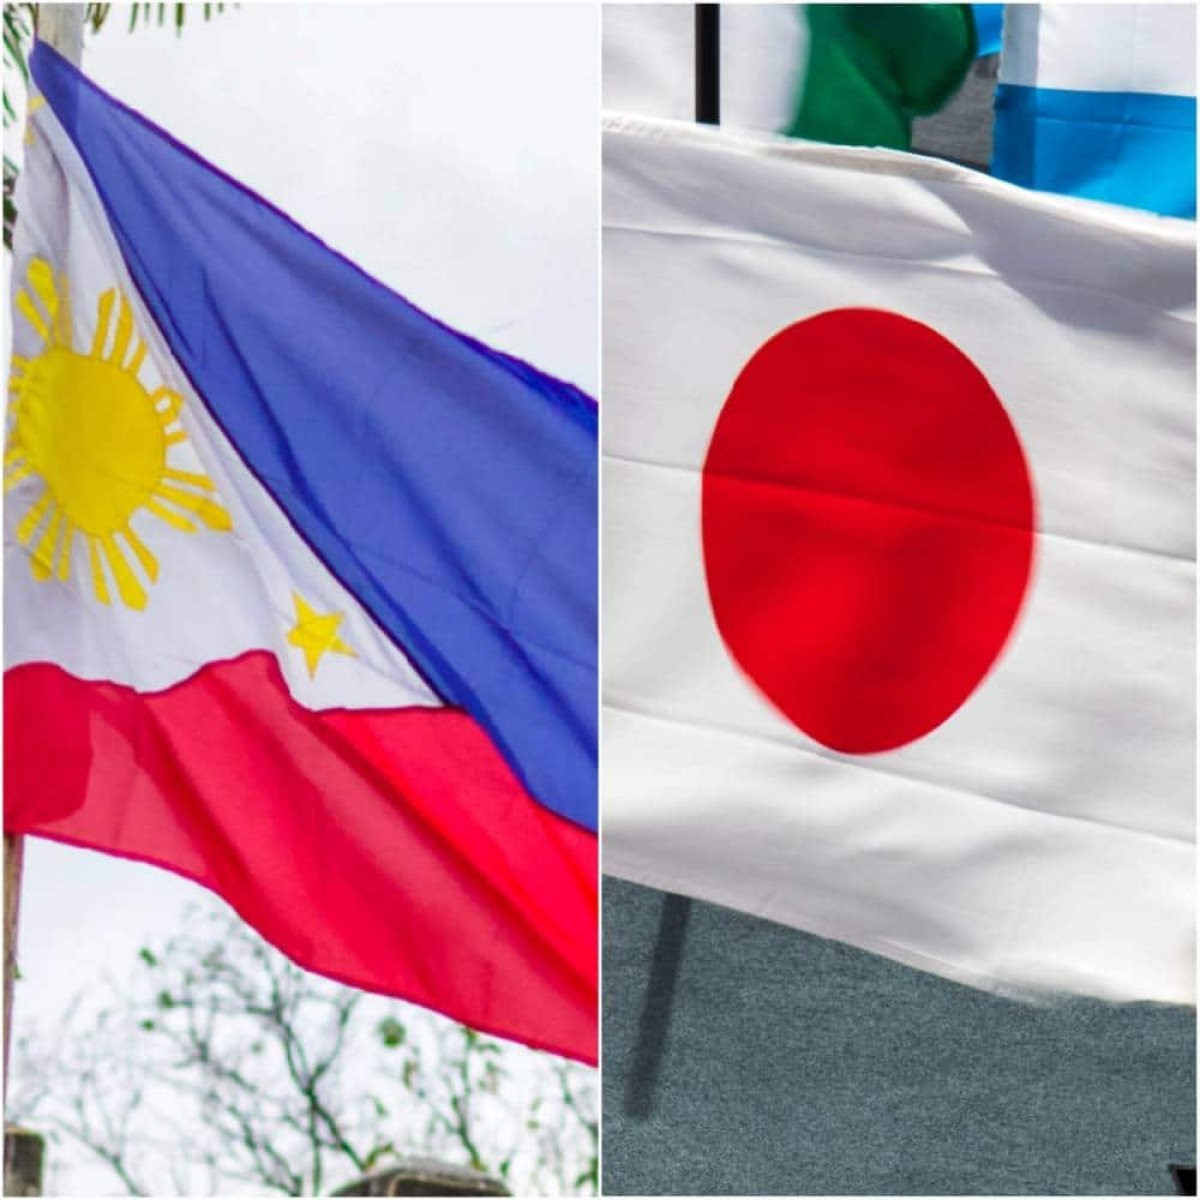 Nhật Bản - Philippines đối thoại 2+2 communication: Đối thoại 2+2 giữa Nhật Bản và Philippines là minh chứng cho sự thân thiện và tình hữu nghị giữa hai quốc gia. Cùng xem hình ảnh buổi đối thoại và tìm hiểu thêm về các hoạt động hợp tác trong tương lai giữa hai quốc gia này.